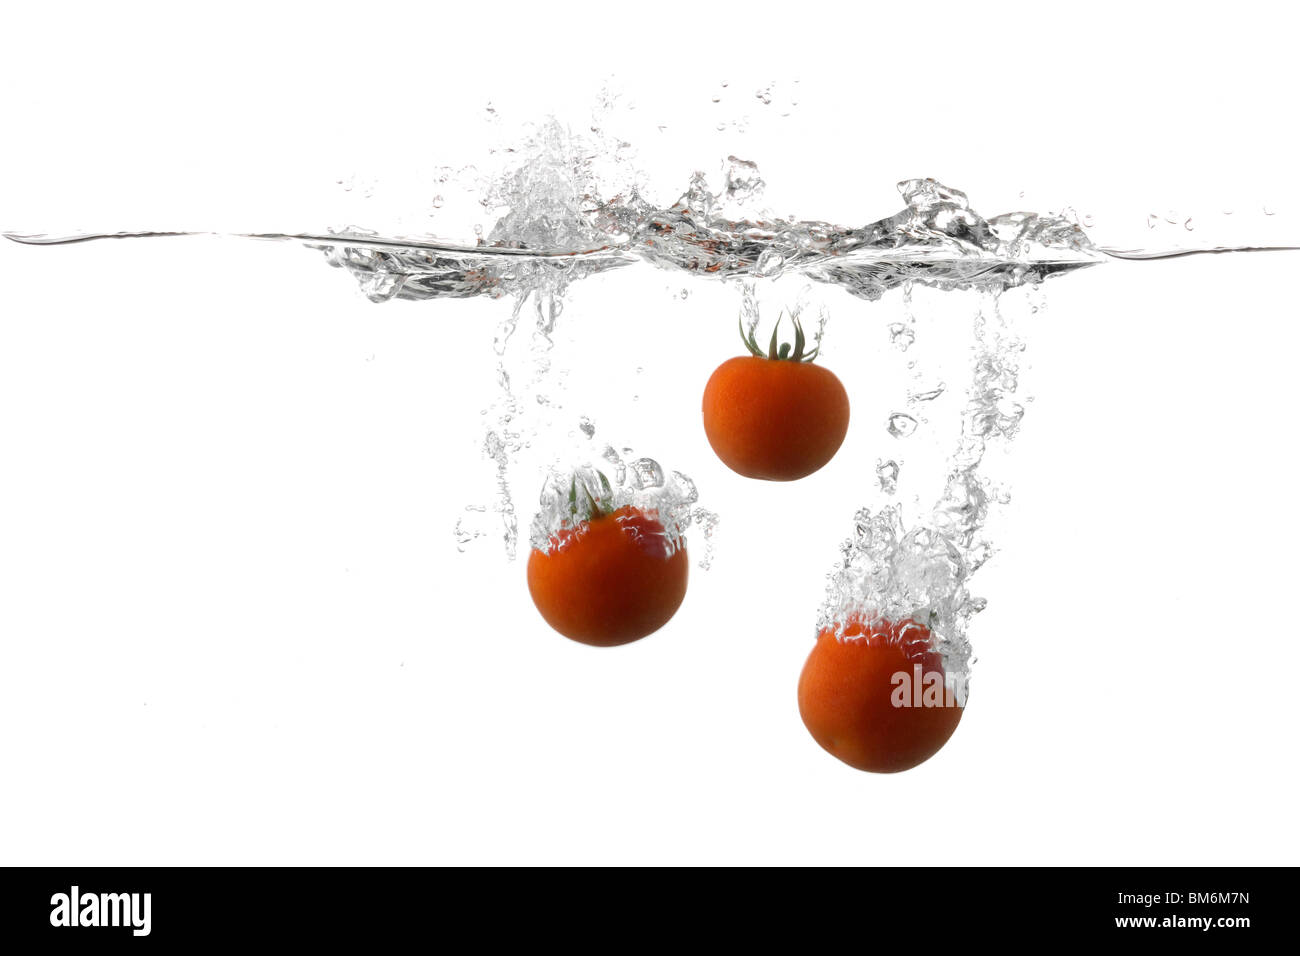 Les tomates fraîches aux éclaboussures sur l'eau Banque D'Images